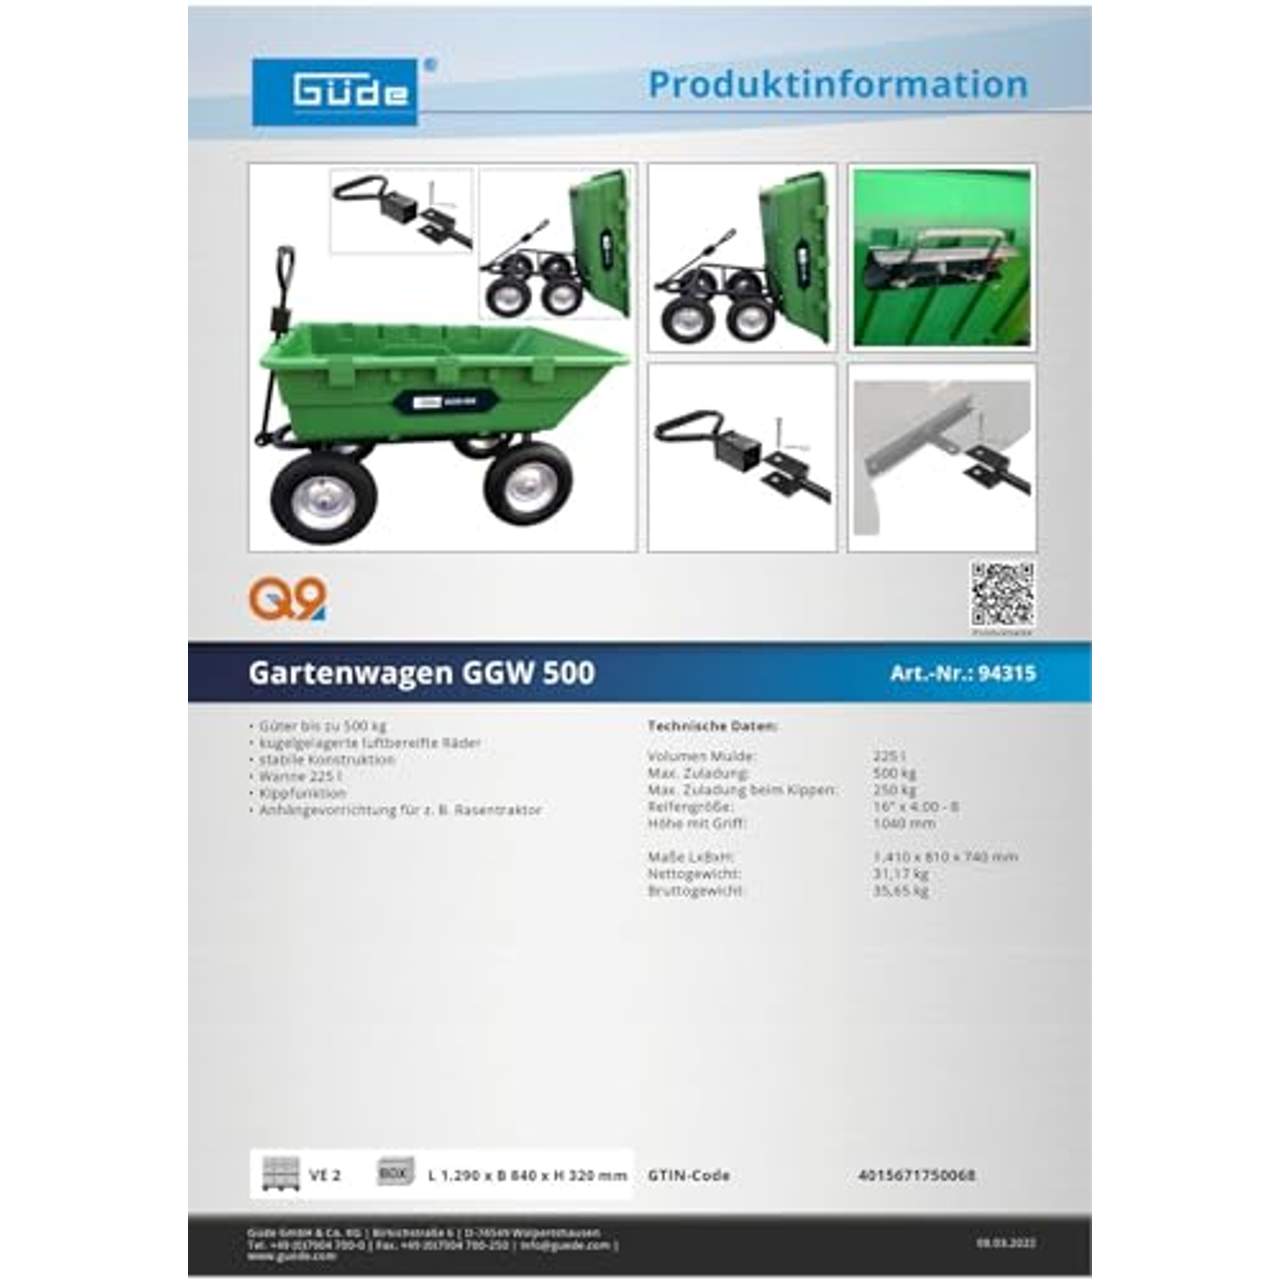 Güde Gartenwagen GGW 500